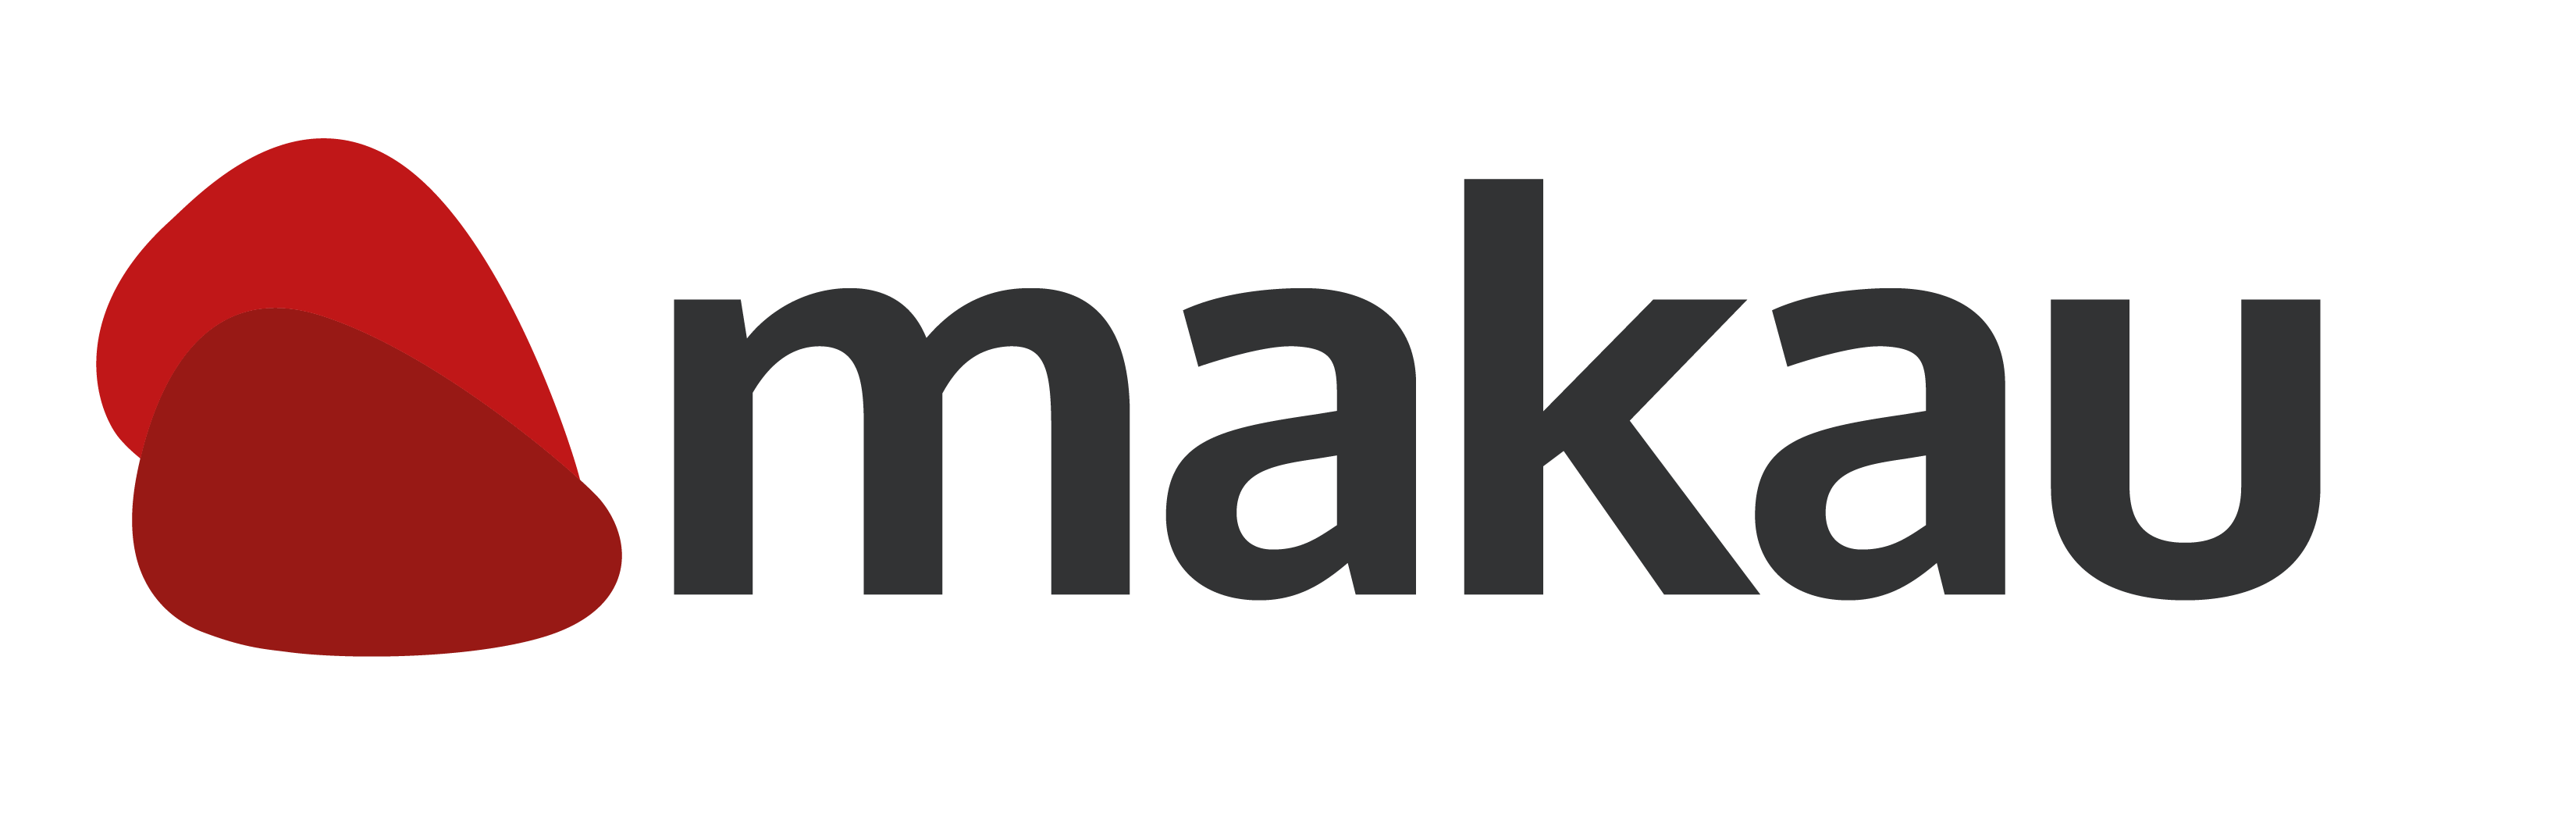 Makau - Diseño web y gráfico